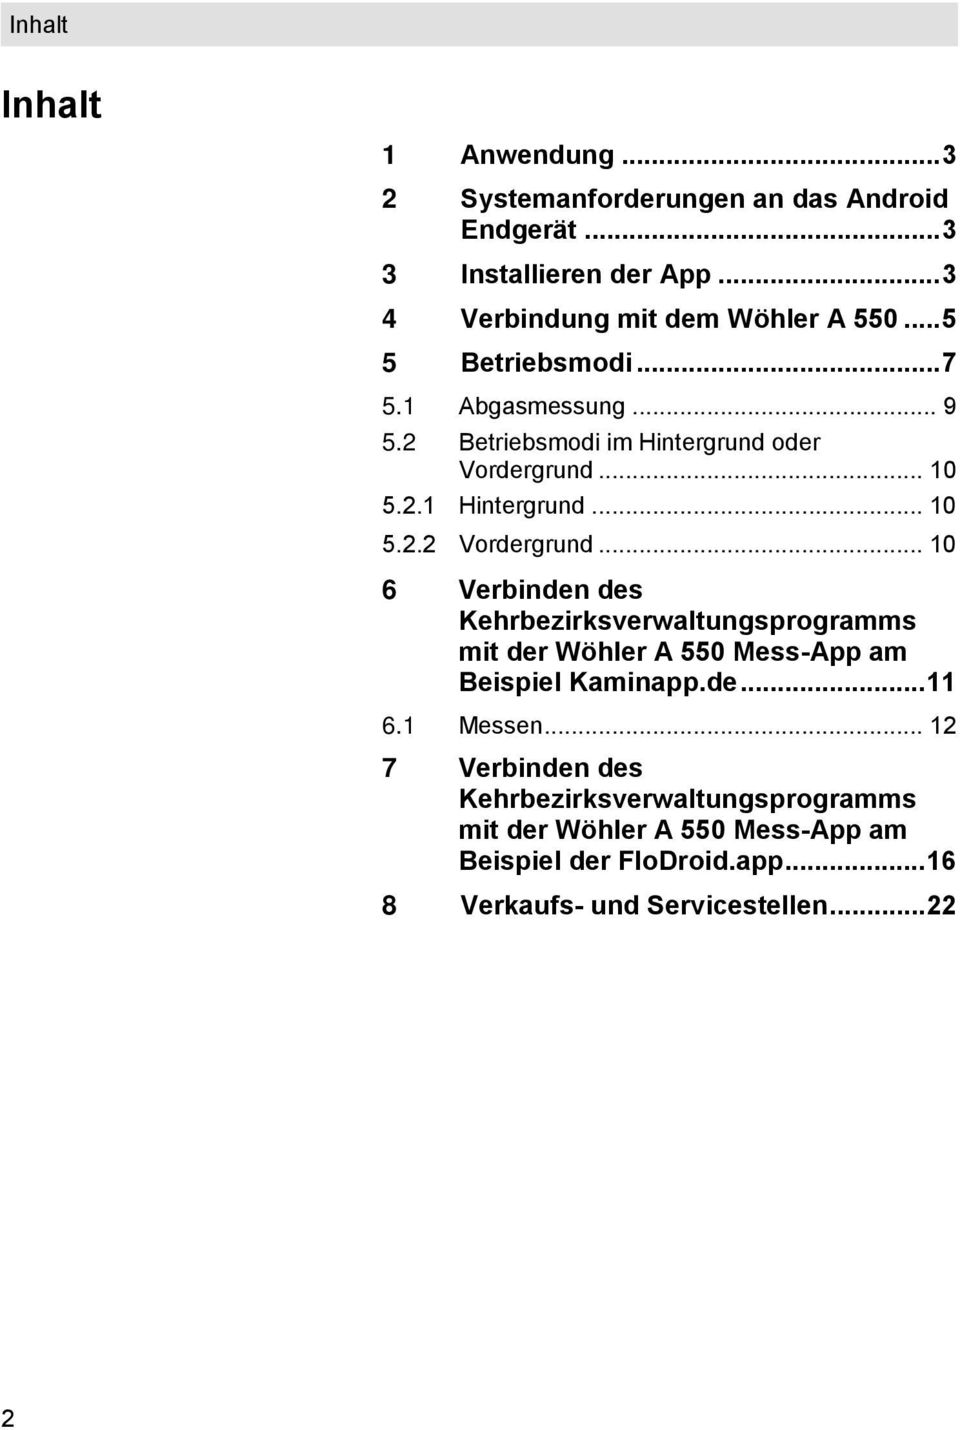 .. 10 6 Verbinden des Kehrbezirksverwaltungsprogramms mit der Wöhler A 550 Mess-App am Beispiel Kaminapp.de... 11 6.1 Messen.